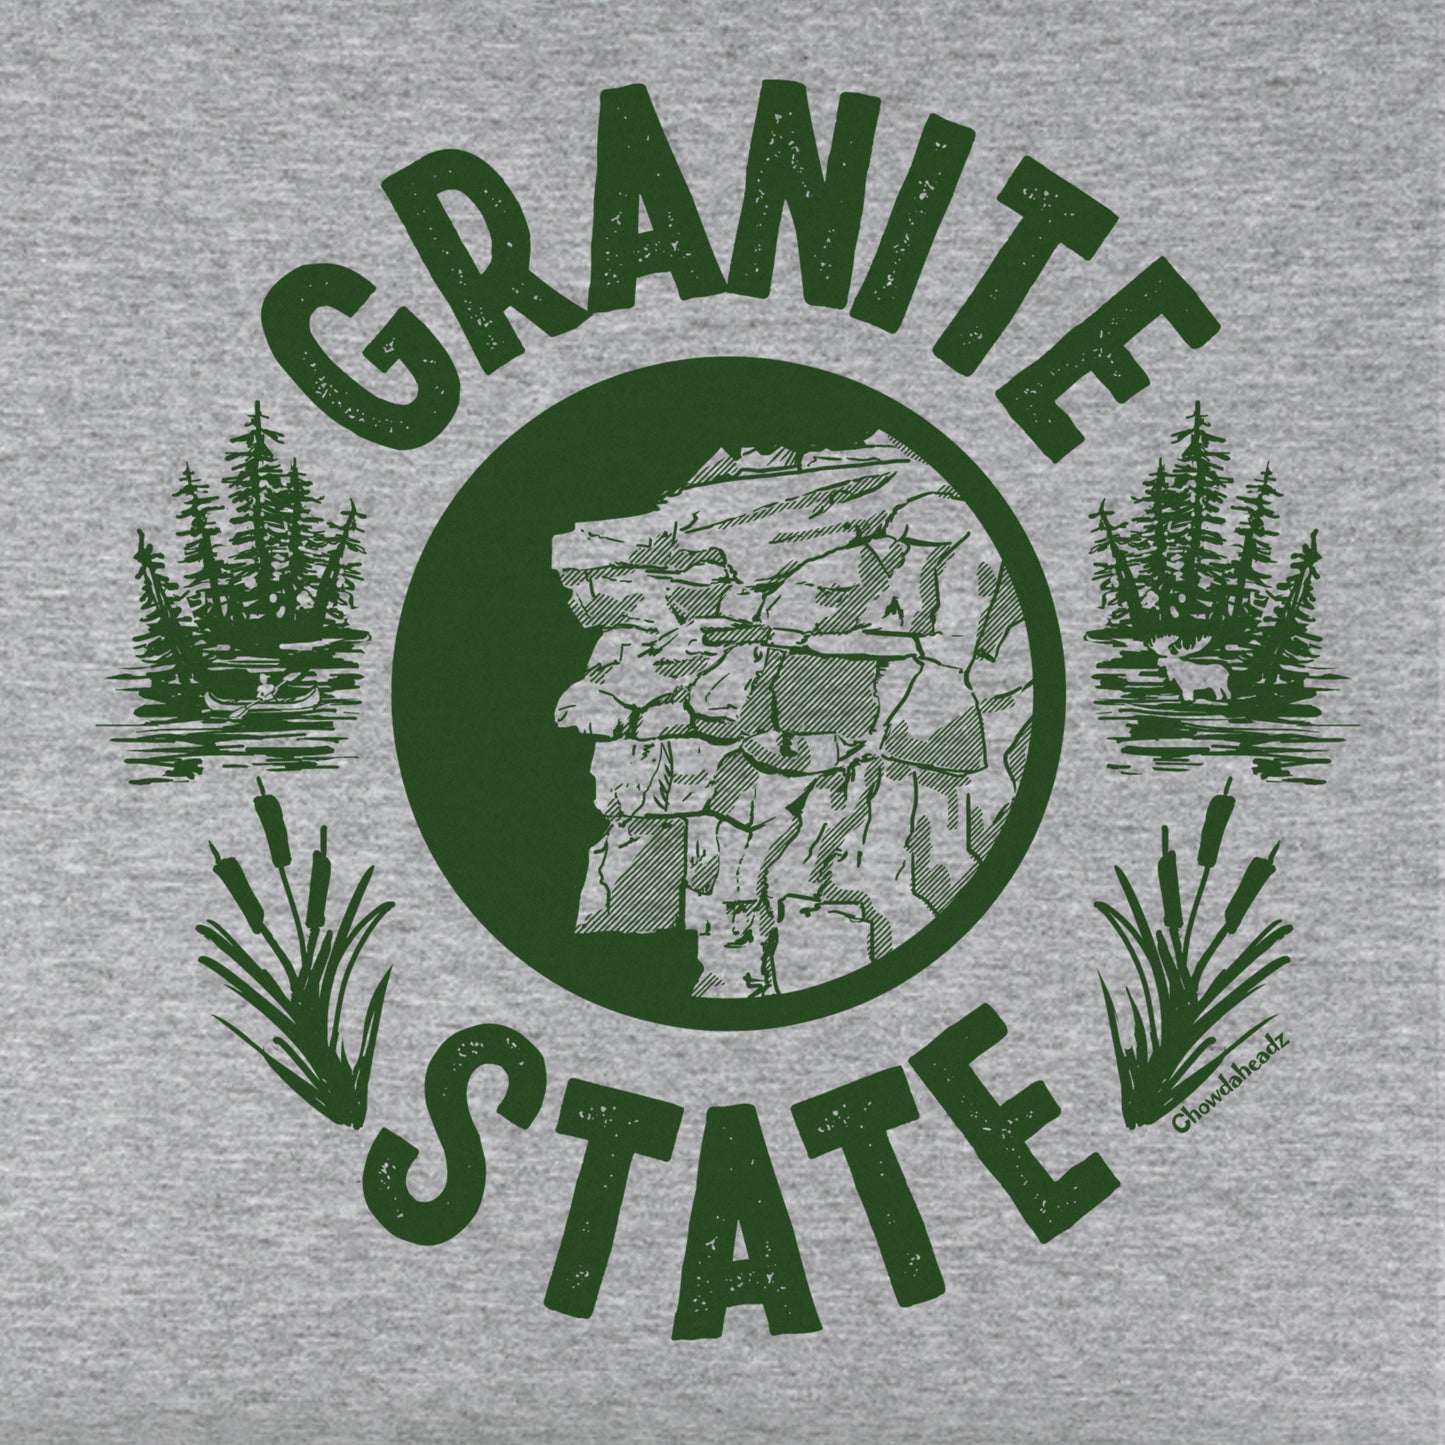 Granite State Youth T-Shirt - Chowdaheadz